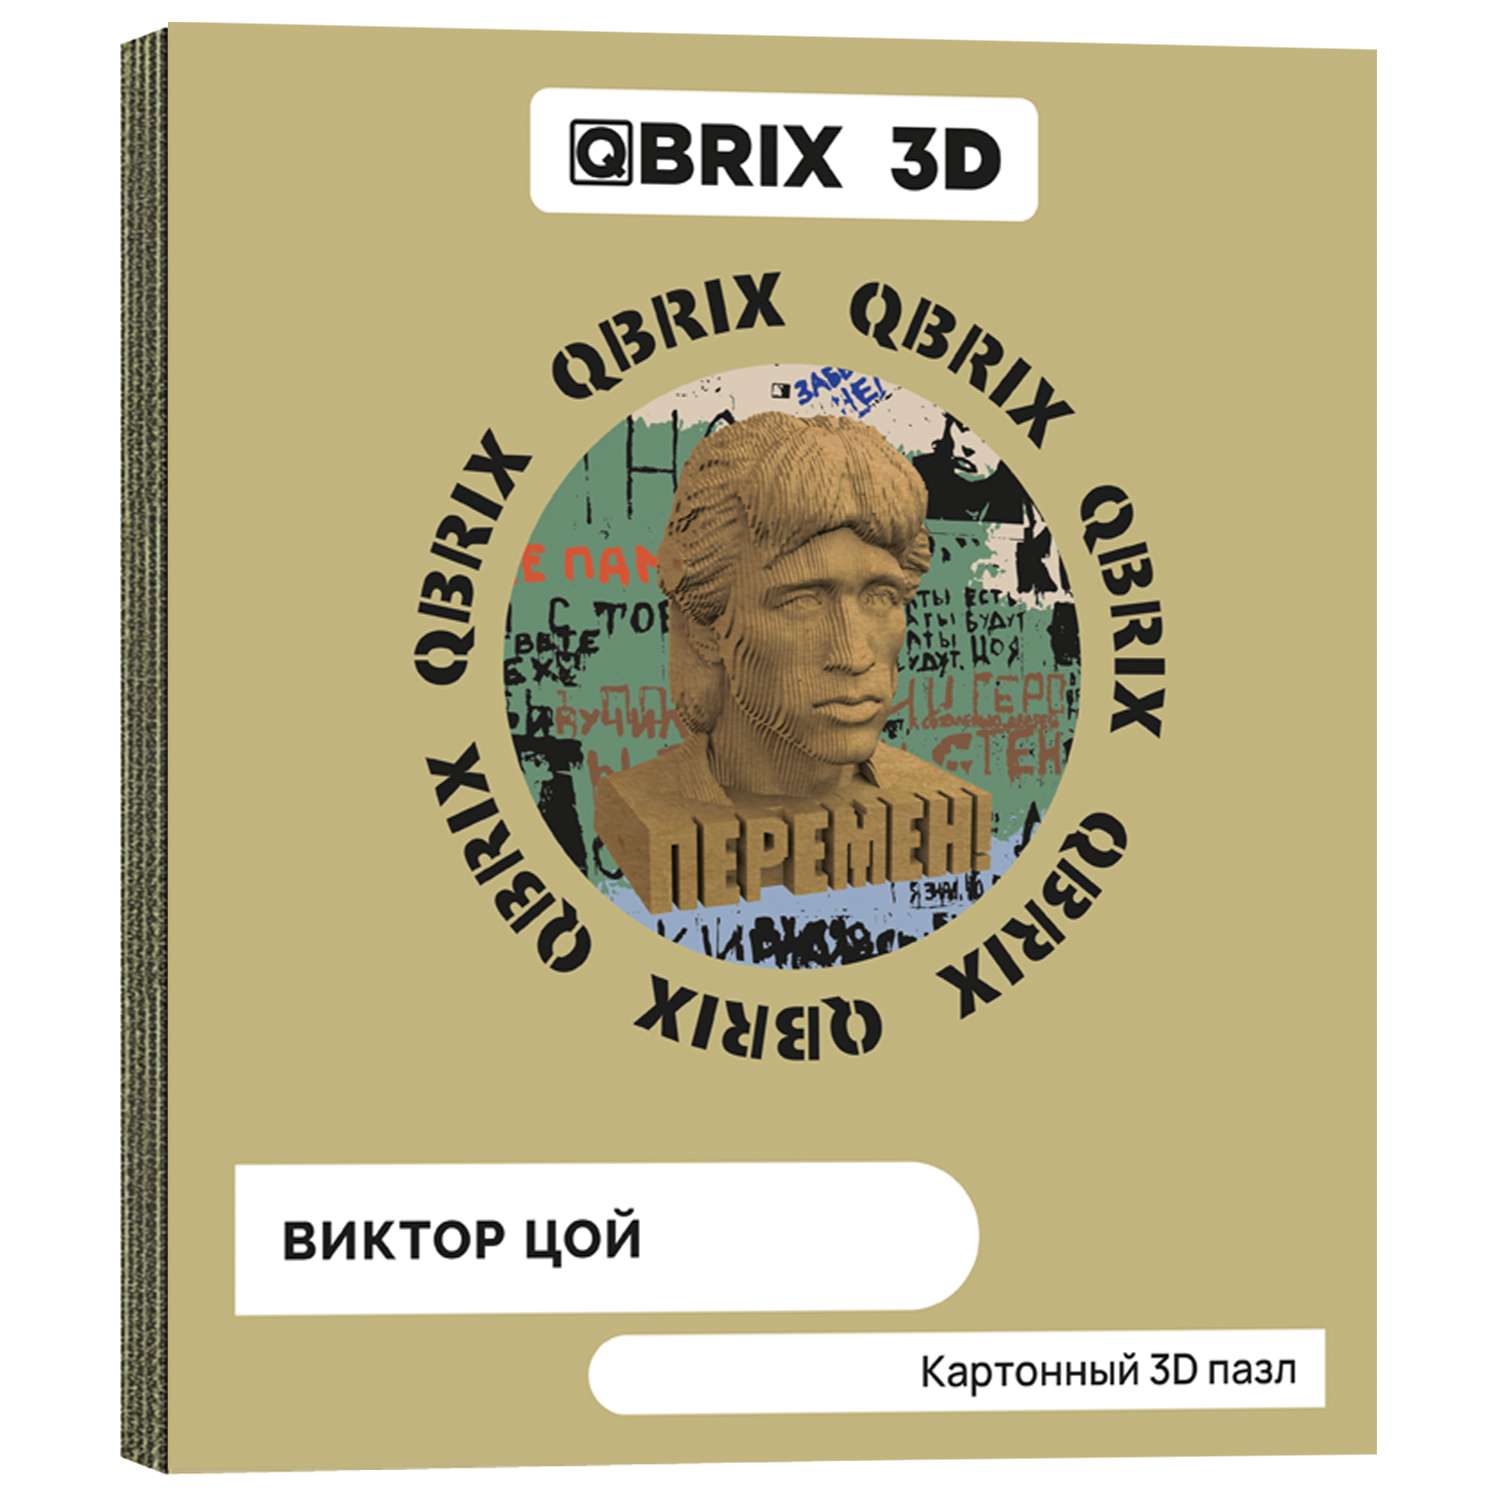 Конструктор QBRIX 3D картонный Виктор Цой 20016 20016 - фото 1